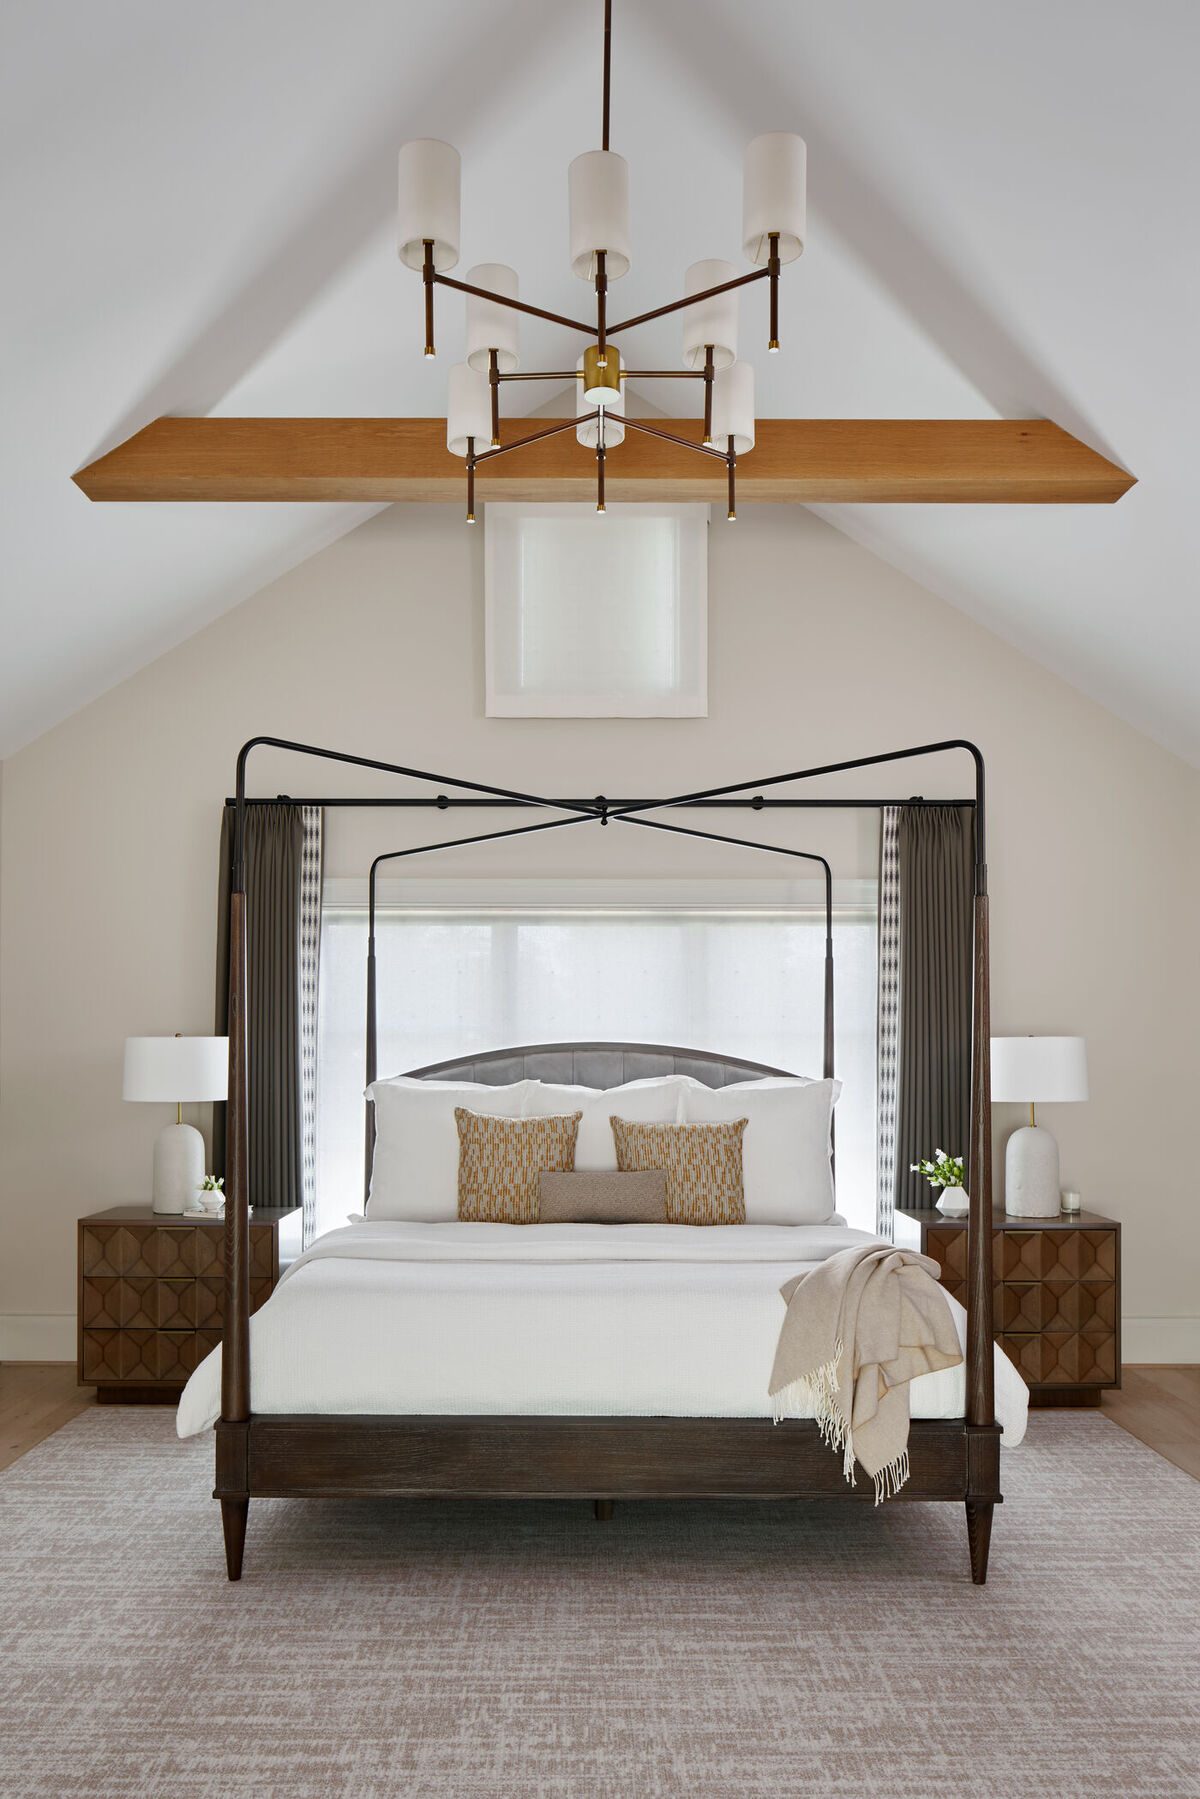 McLean bedroom design